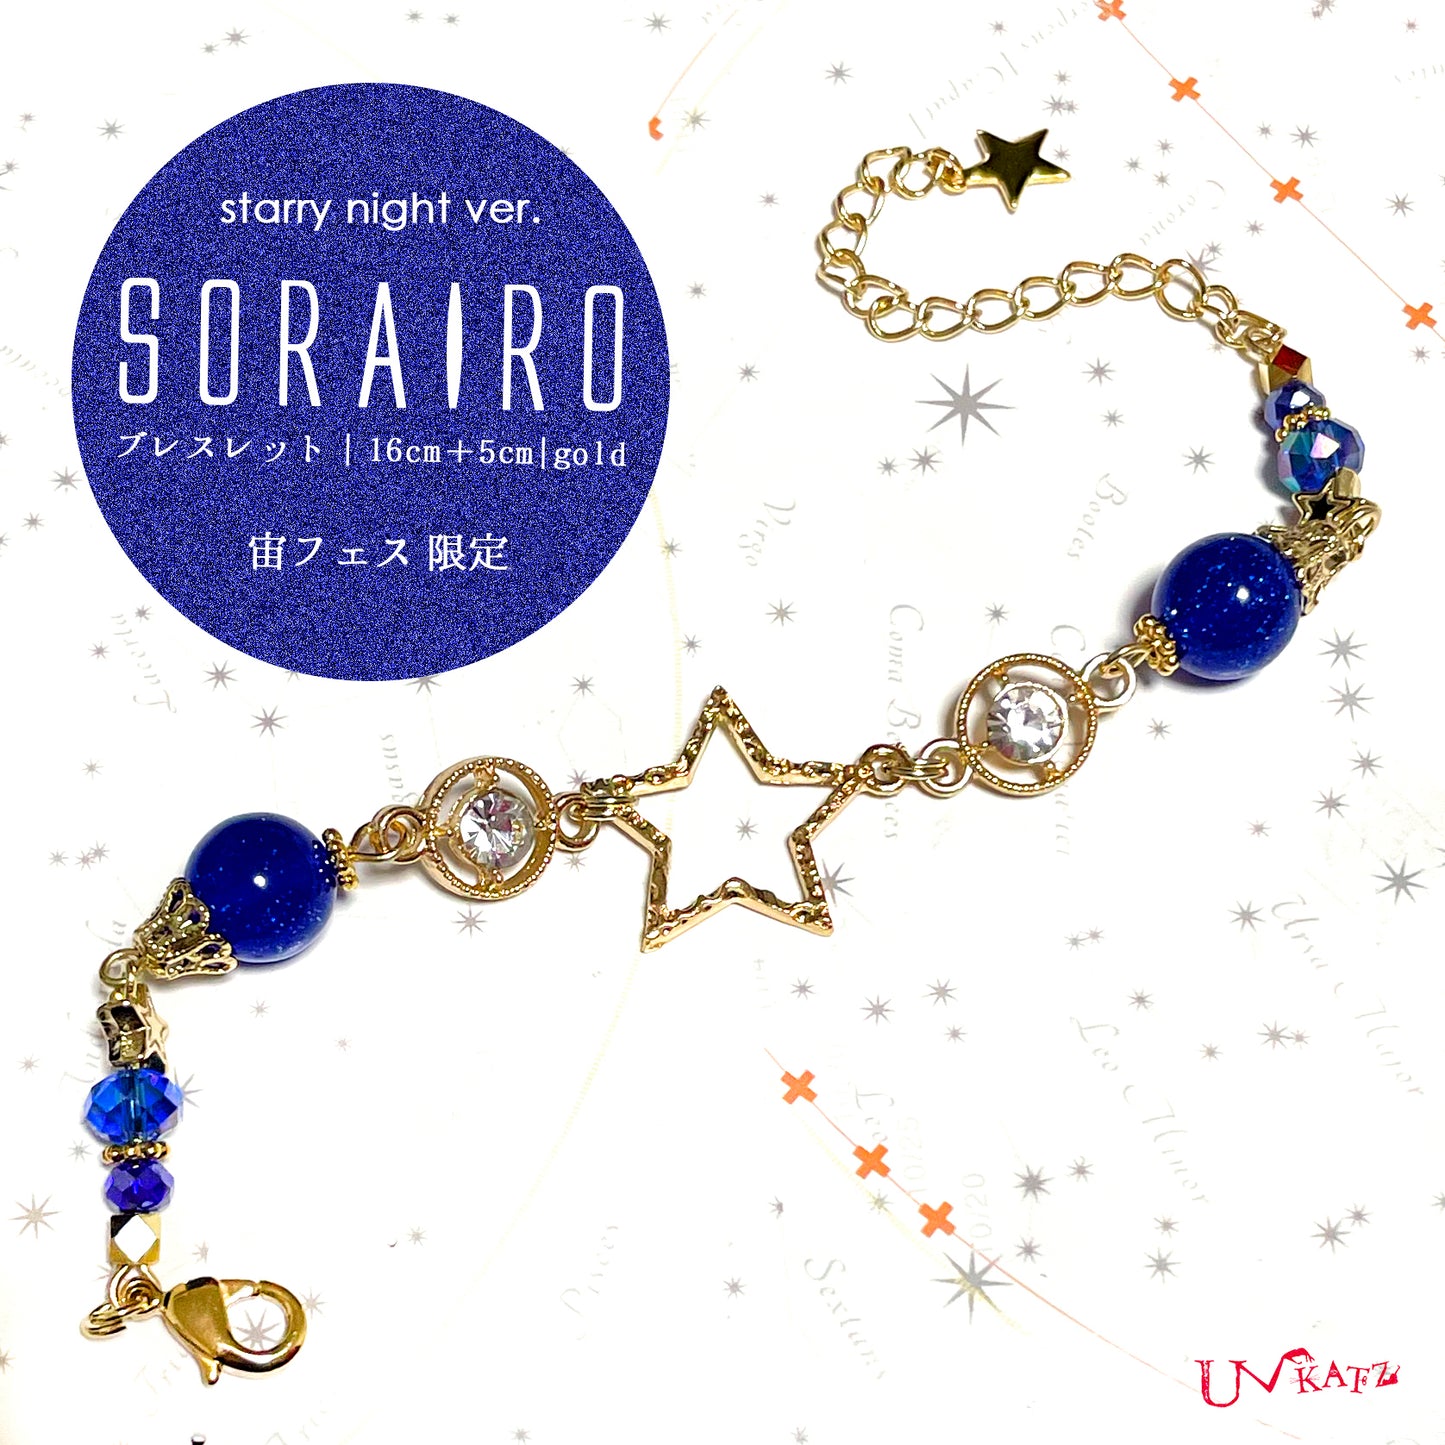 【宙フェス限定】SORAIROブレスレット(Starry night ver.)